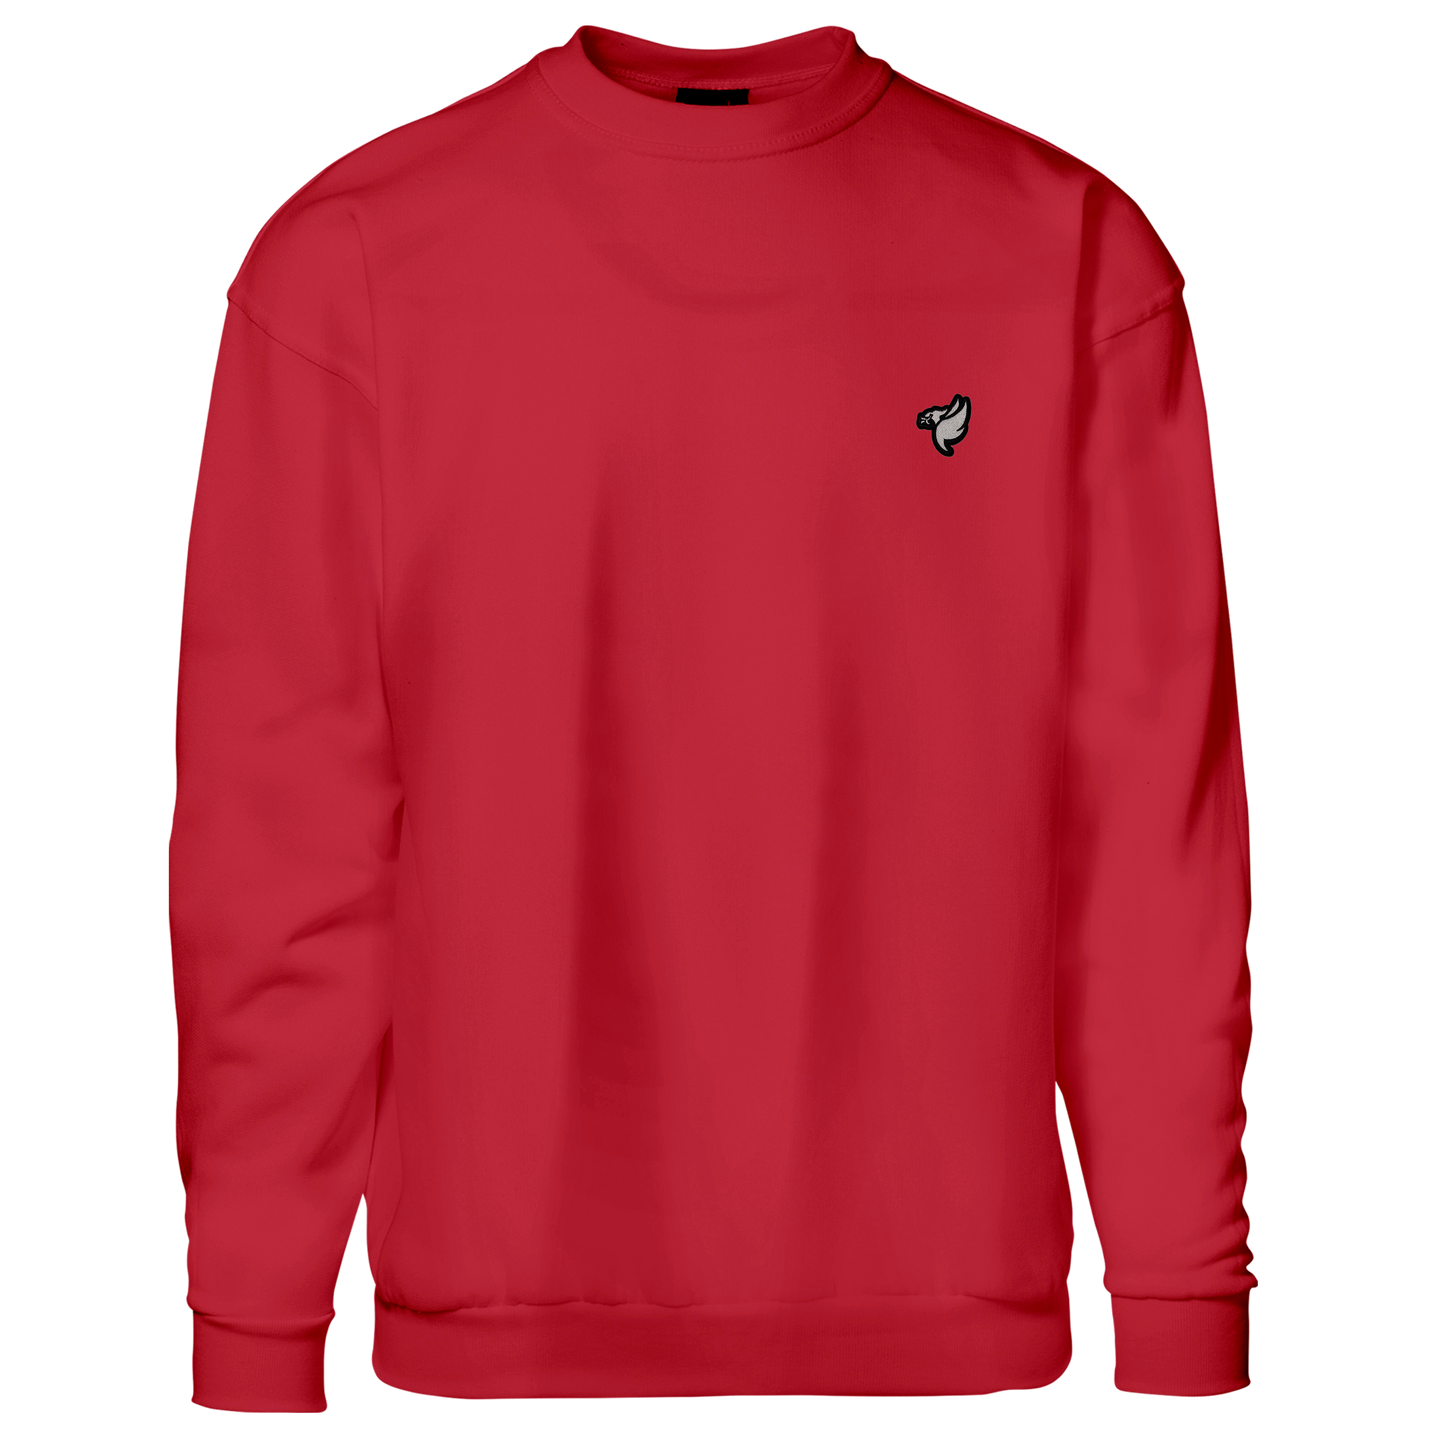 Redmen (Silver Bird) - Sweatshirt - Børn